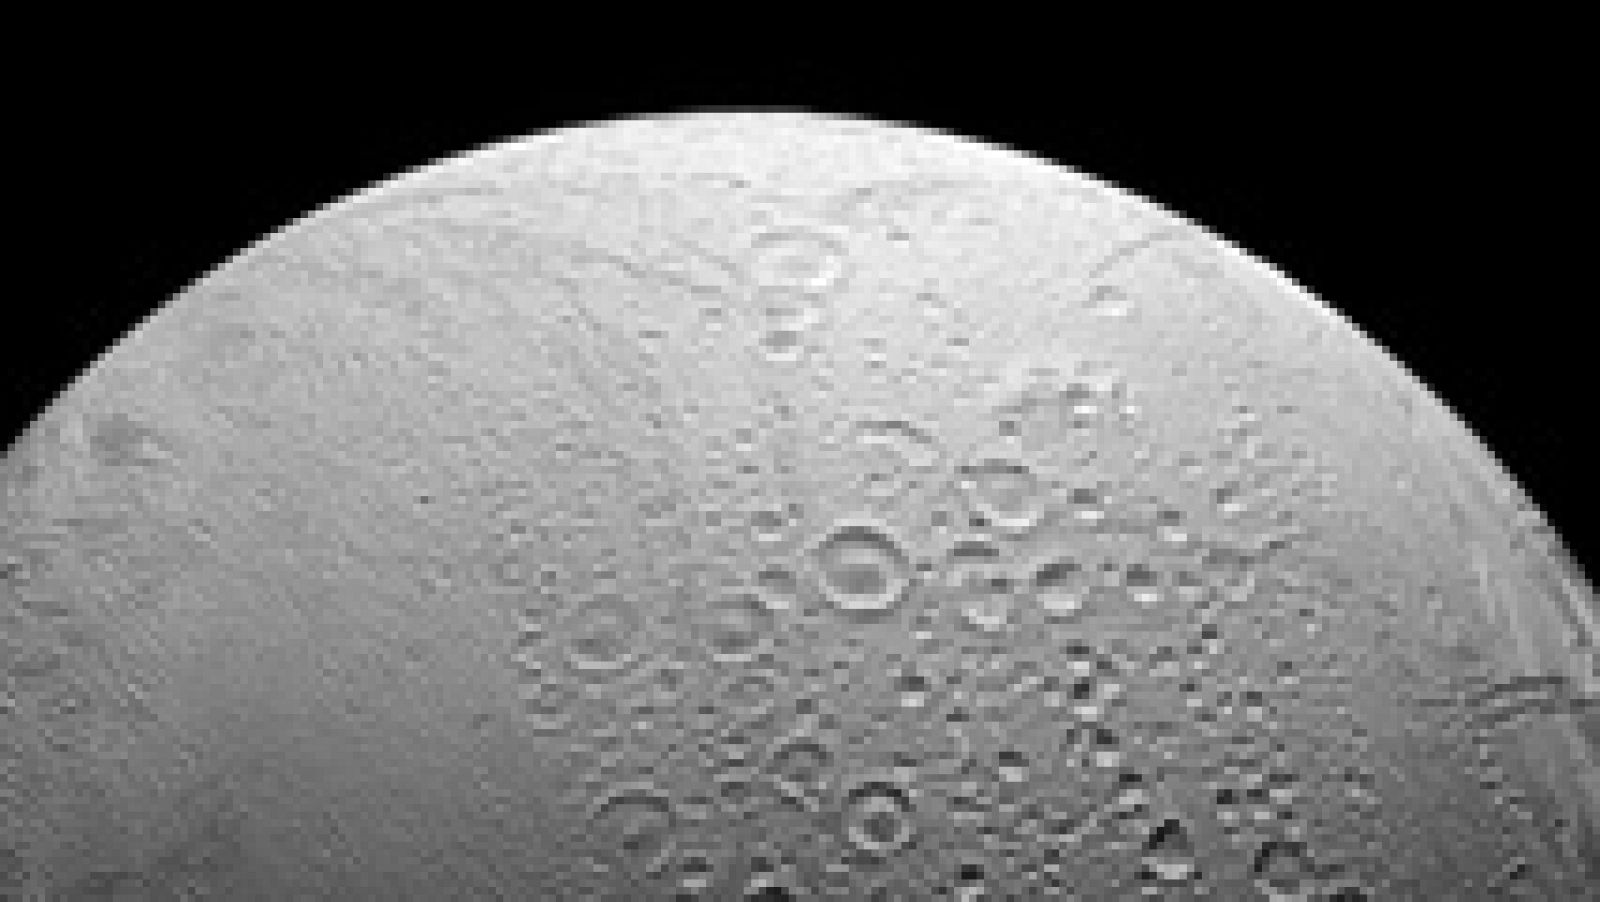 La NASA confirma que Encélado, una de las lunas de Saturno, puede albergar vida microscópica